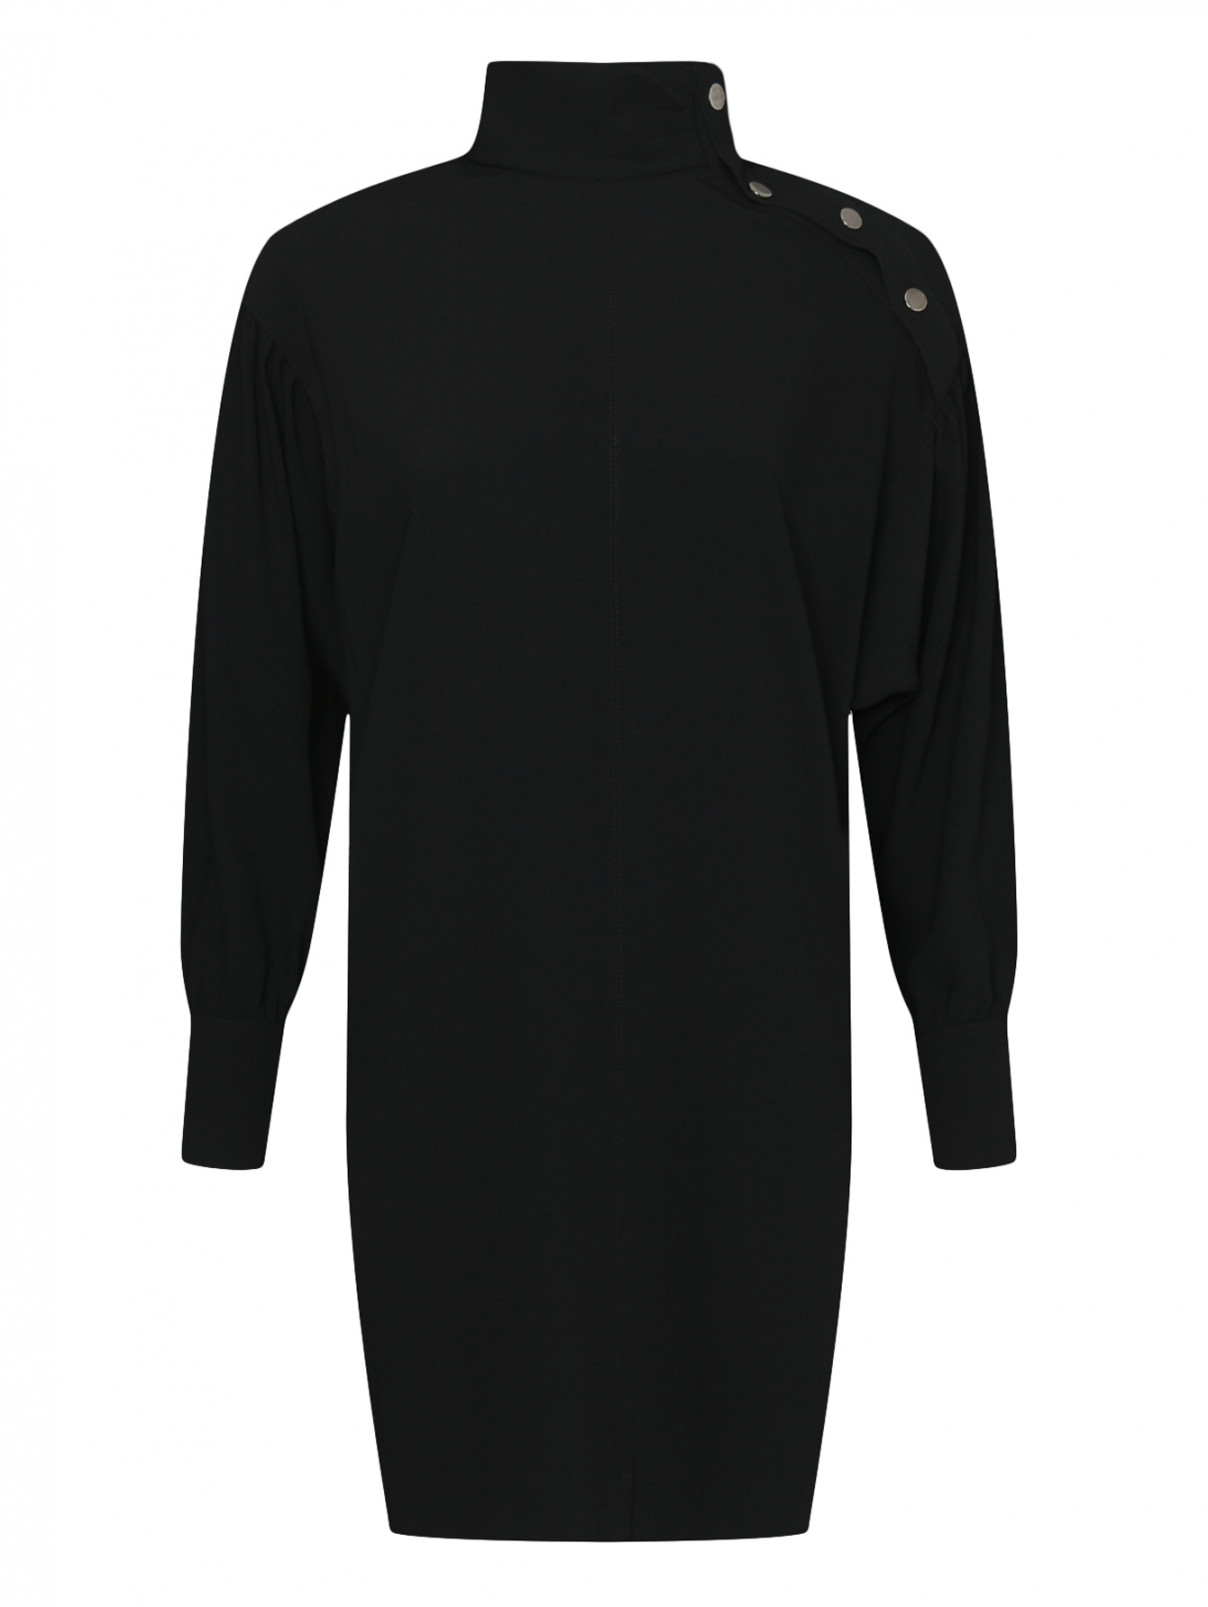 Платье свободного кроя с металлическими кнопками Dorothee Schumacher  –  Общий вид  – Цвет:  Черный